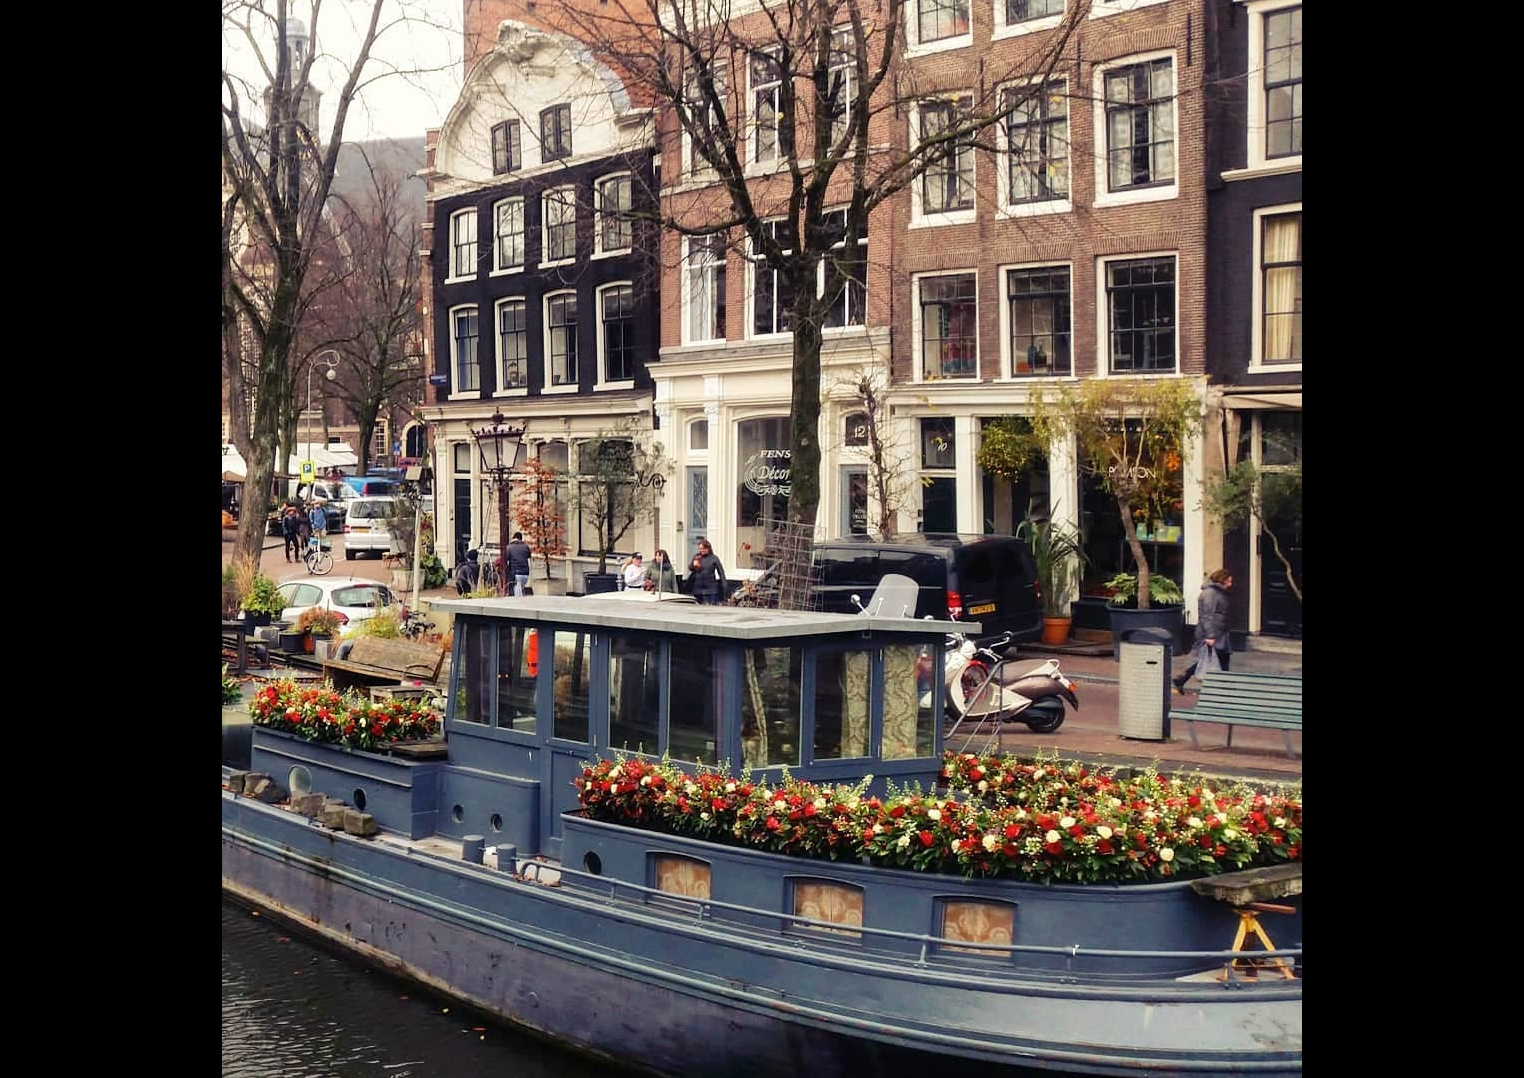 Как и владелец этого хаусбота в Голландии. Украсить лодку красно-белыми живыми цветами - это как купить настоящую пахучую елку домой вместо пластиковой.